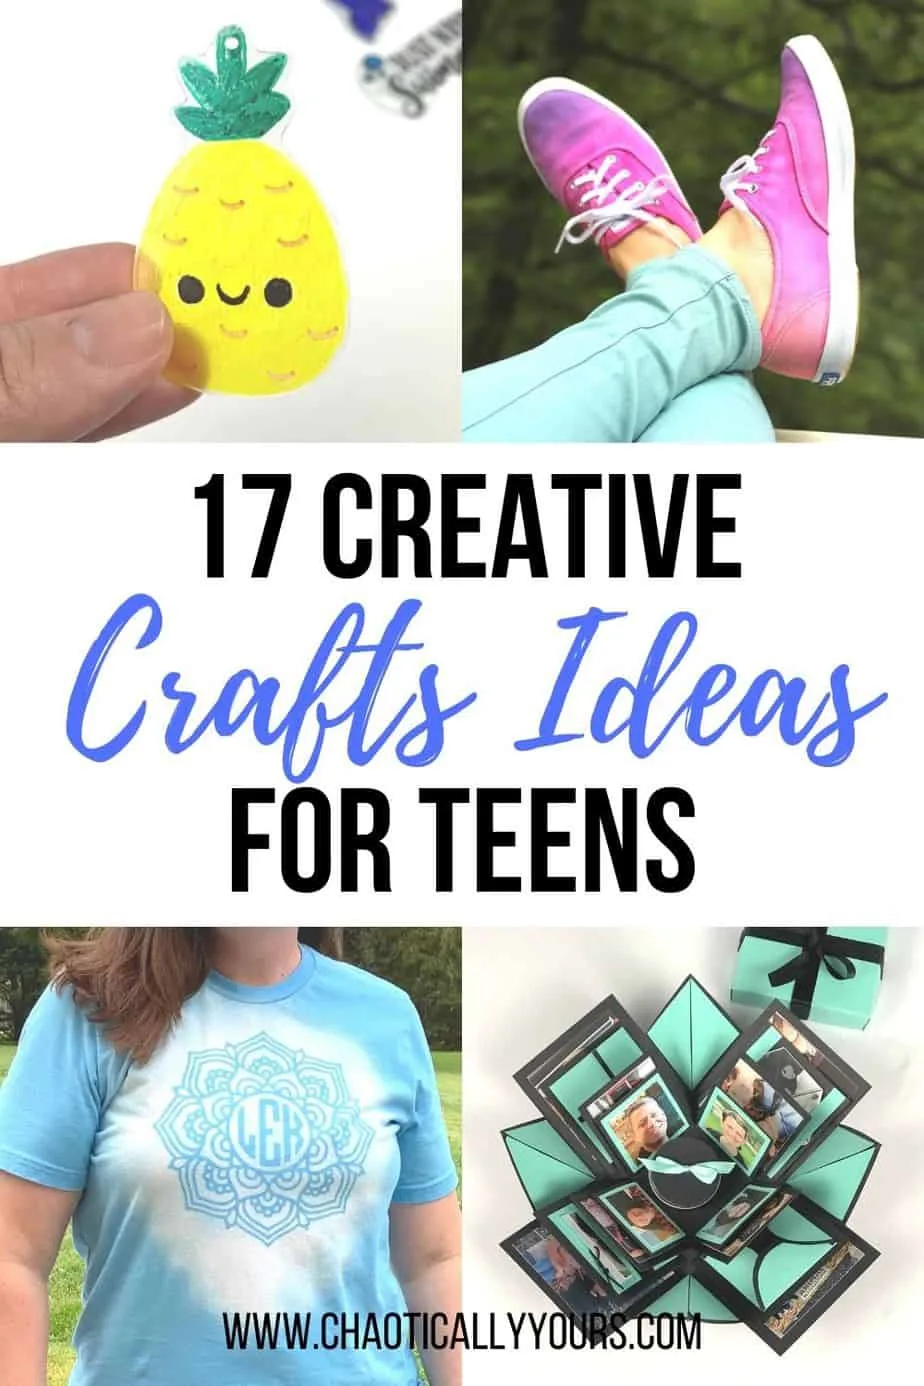 https://chaoticallyyours.com/wp-content/uploads/2020/05/craft-ideas-for-teen.jpg.webp